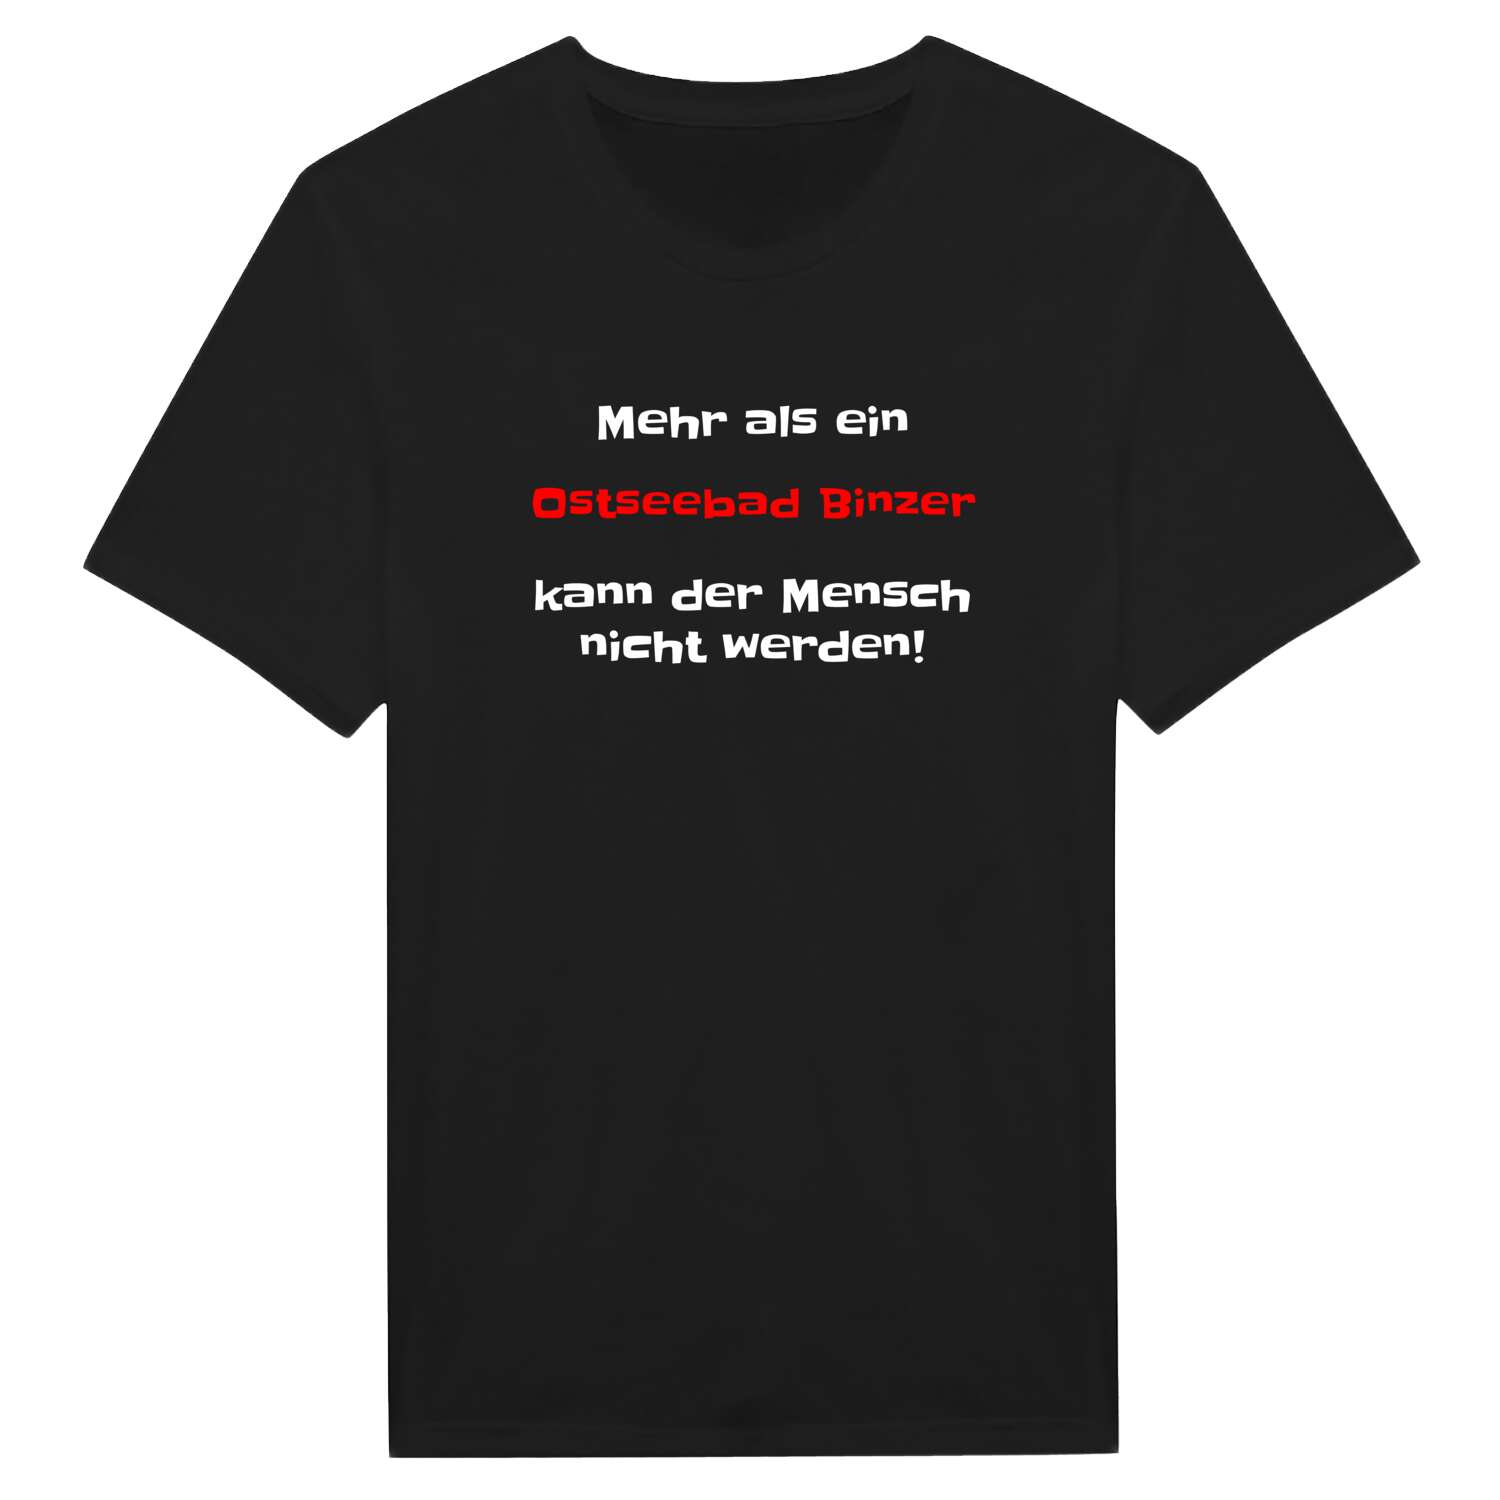 Ostseebad Binz T-Shirt »Mehr als ein«